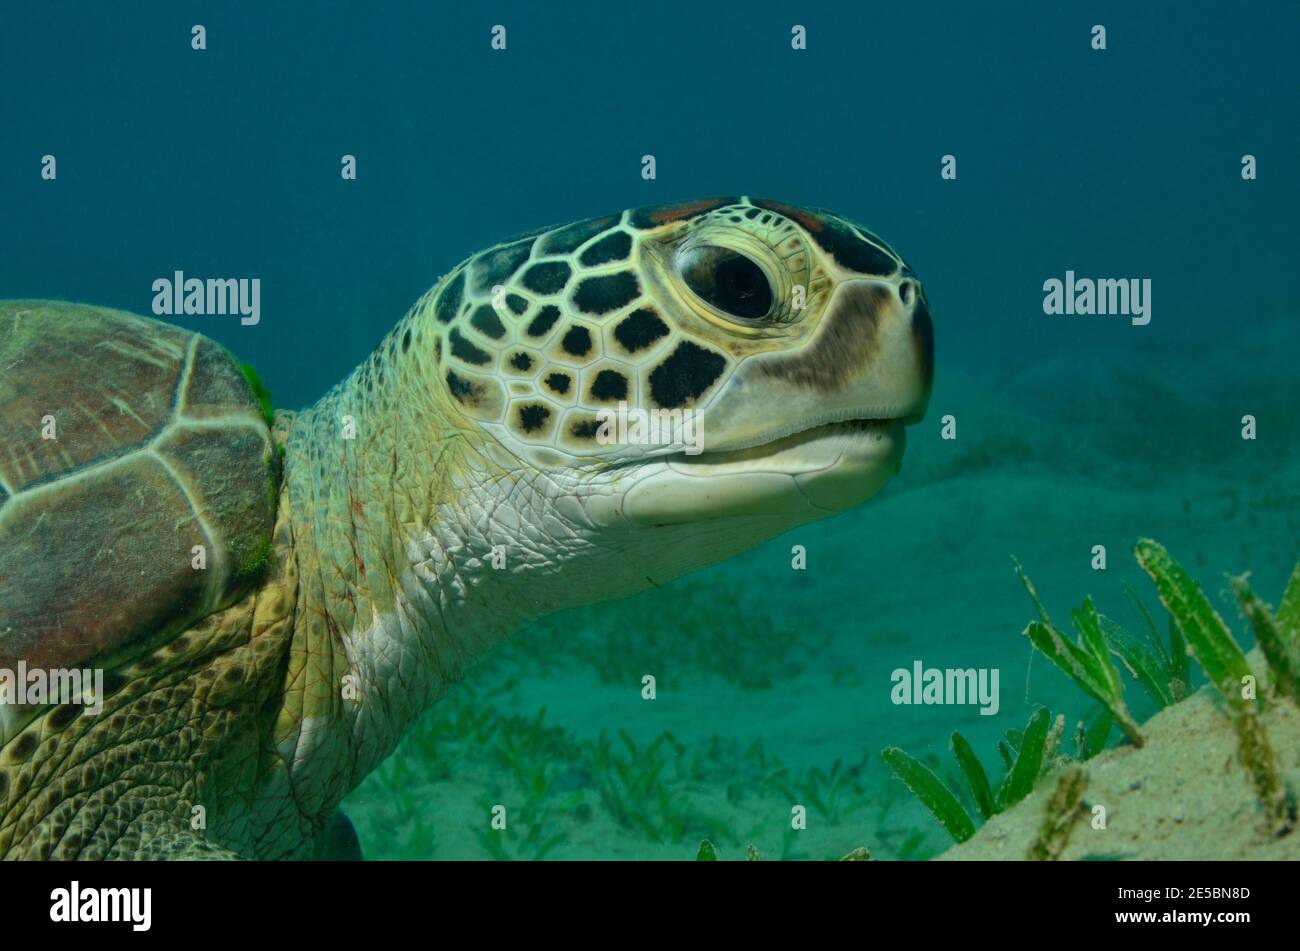 Chelonia mydas, Grüne Meeresschildkröte, green sea turtle, Coraya Beach, Rotes Meer, Ägypten, Red Sea, Egypt Stock Photo